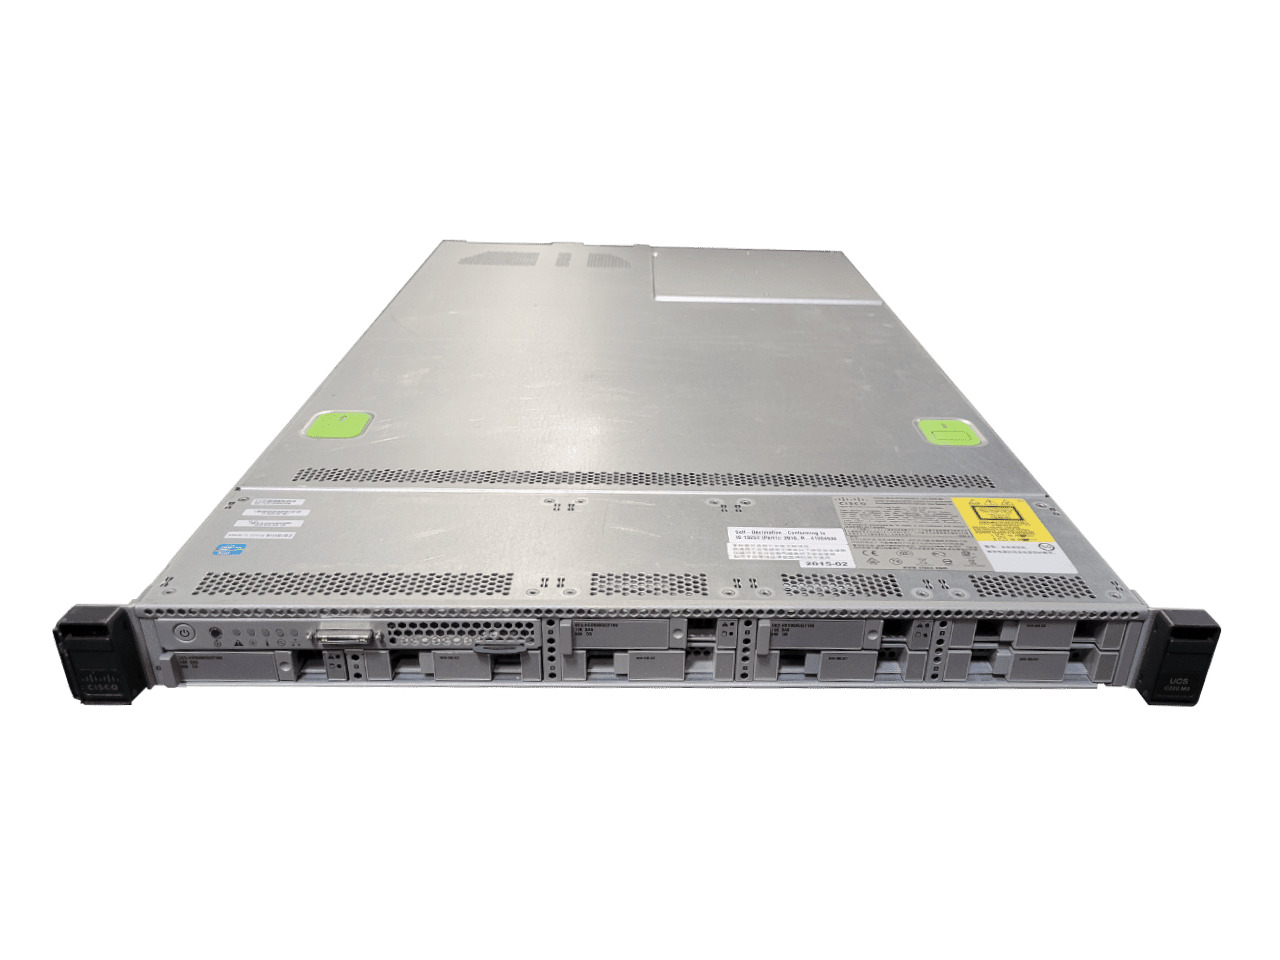 Cisco UCS C220 M3  2x 6-Core Xeon E5-2620 2.0GHz 12-Cores  / 64GB RAM / No HDD